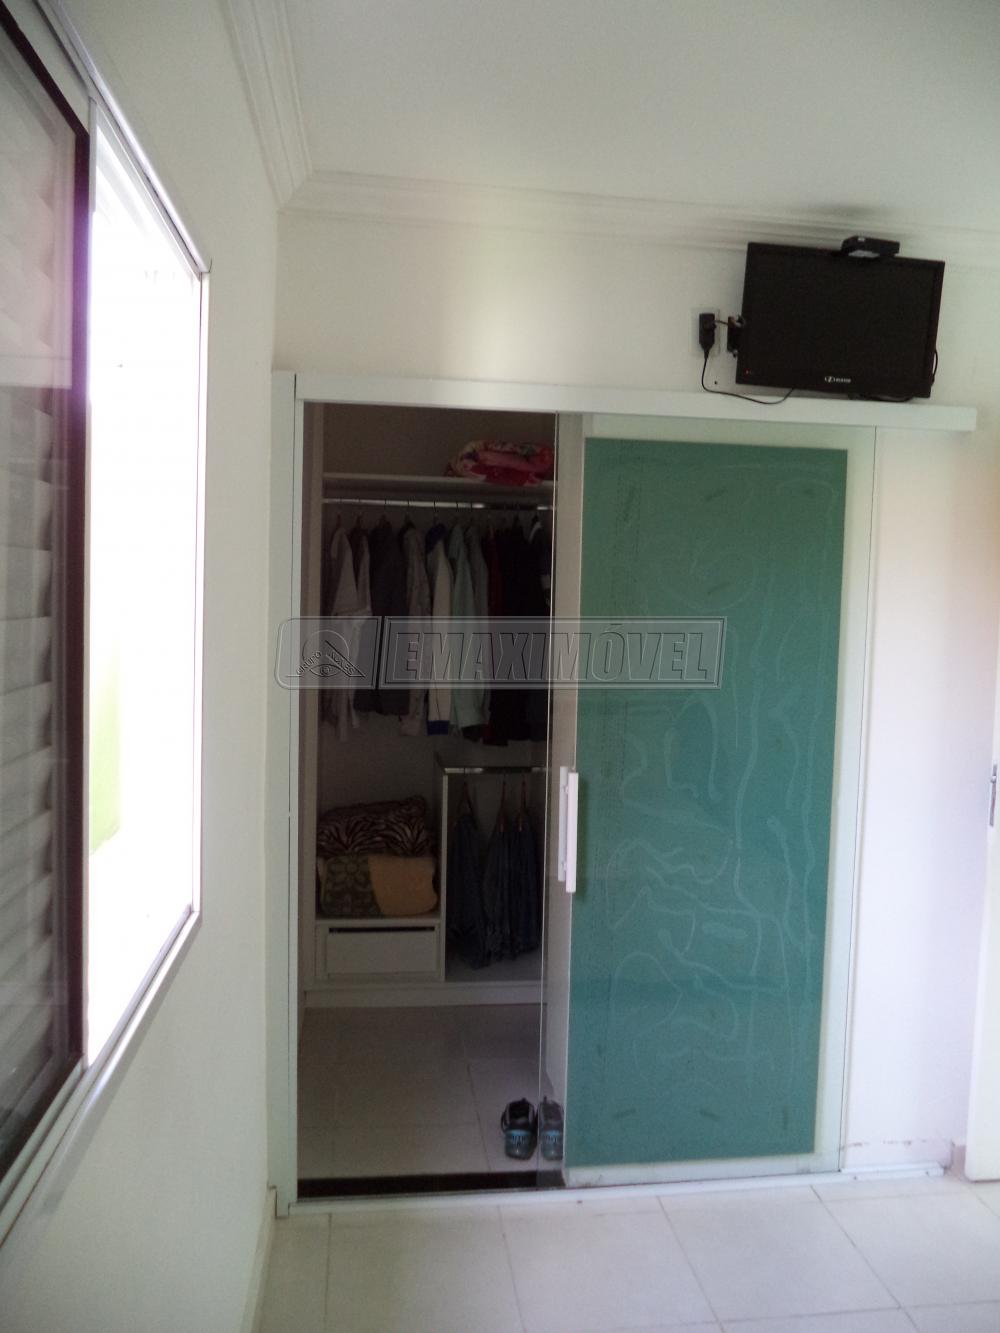 Comprar Casa / em Condomínios em Sorocaba R$ 290.000,00 - Foto 8